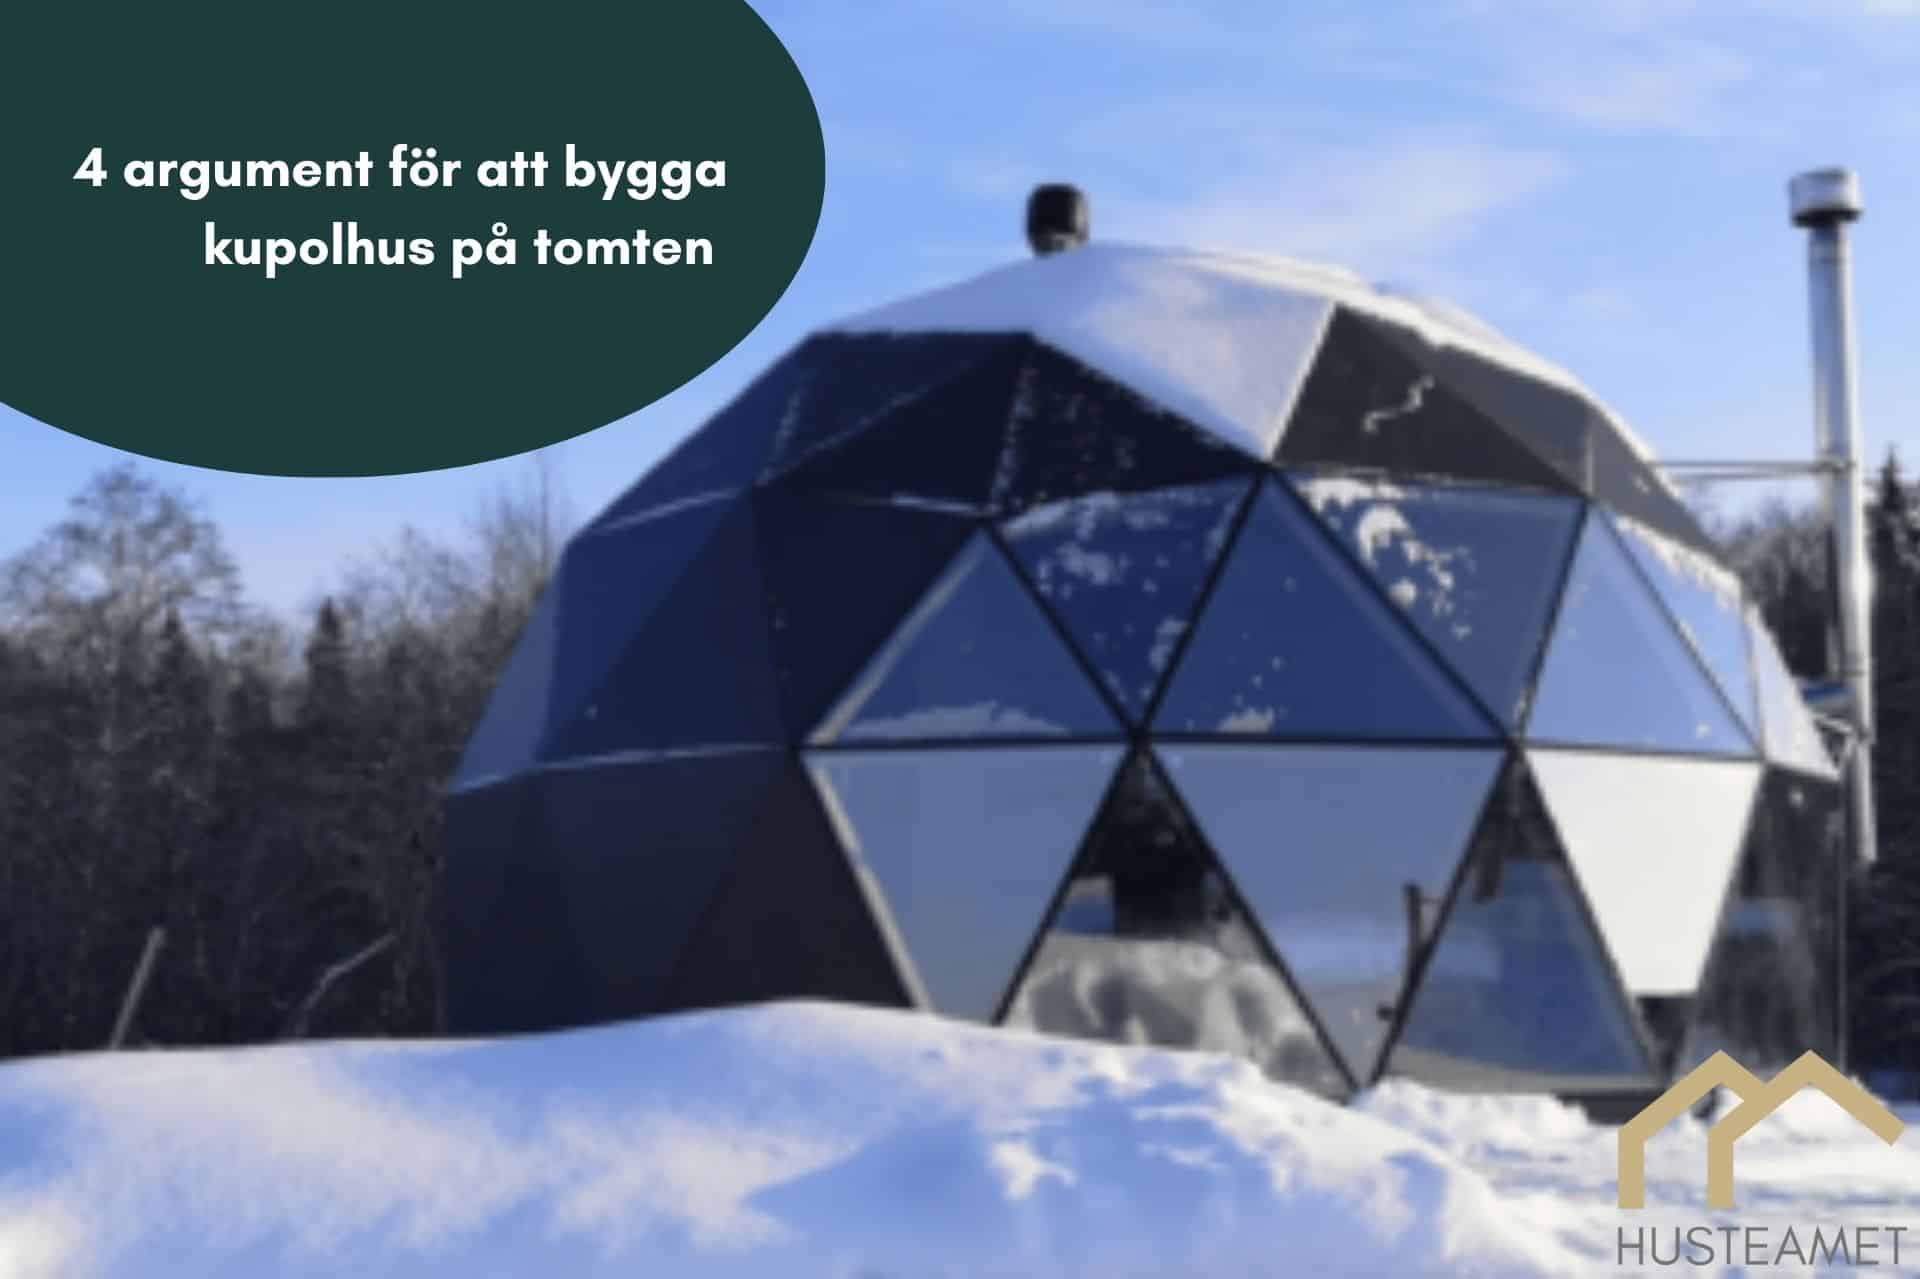 geodetiskt kupolhus i snöig miljö i artikel om 4 argument för att bygga ett som fritidshus